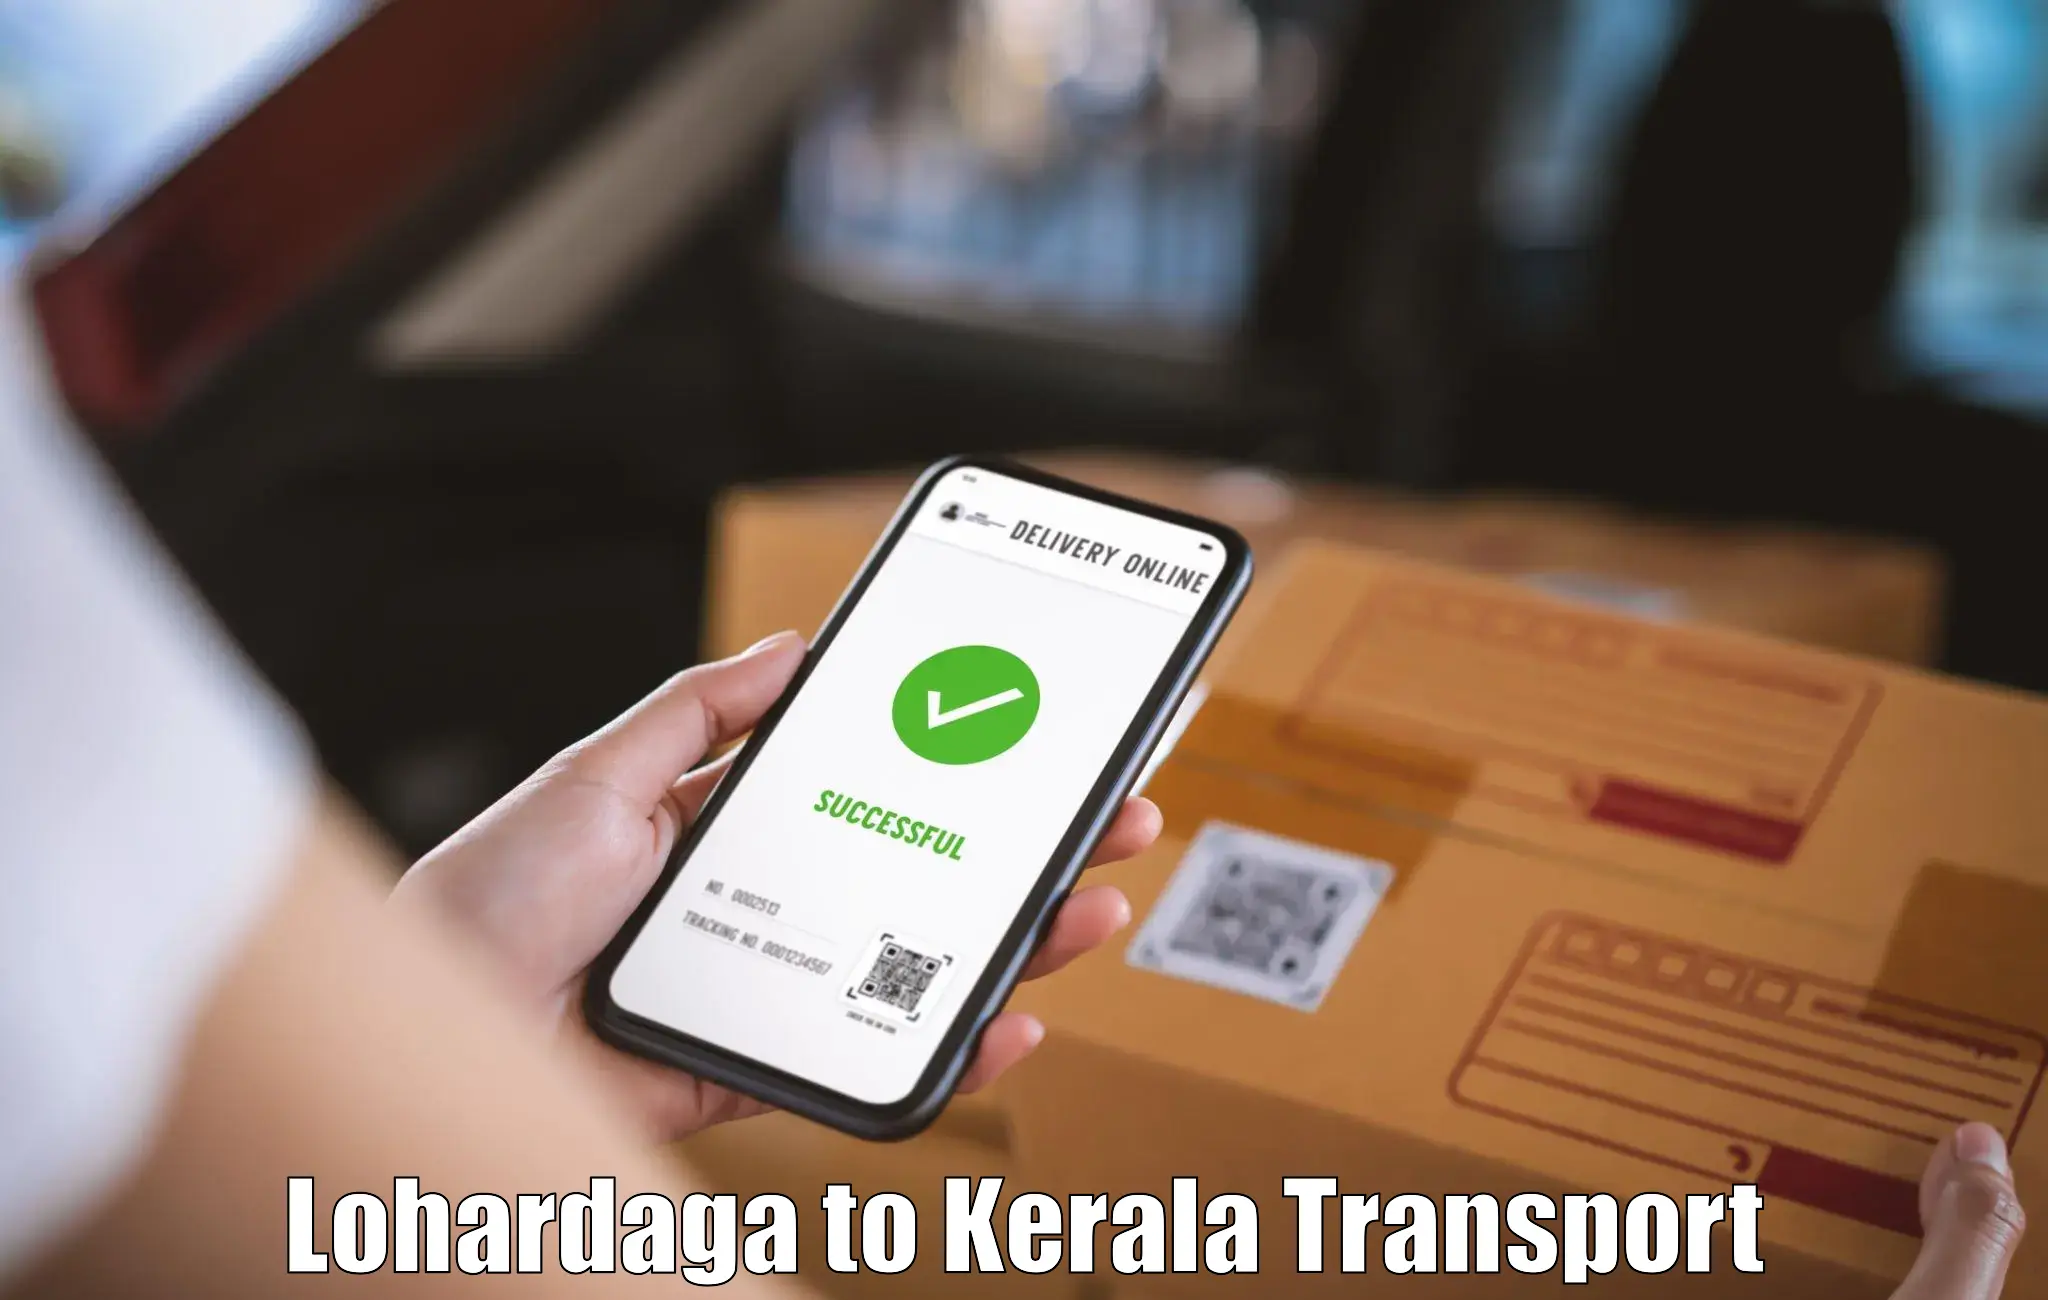 Domestic transport services Lohardaga to Kuthiathode